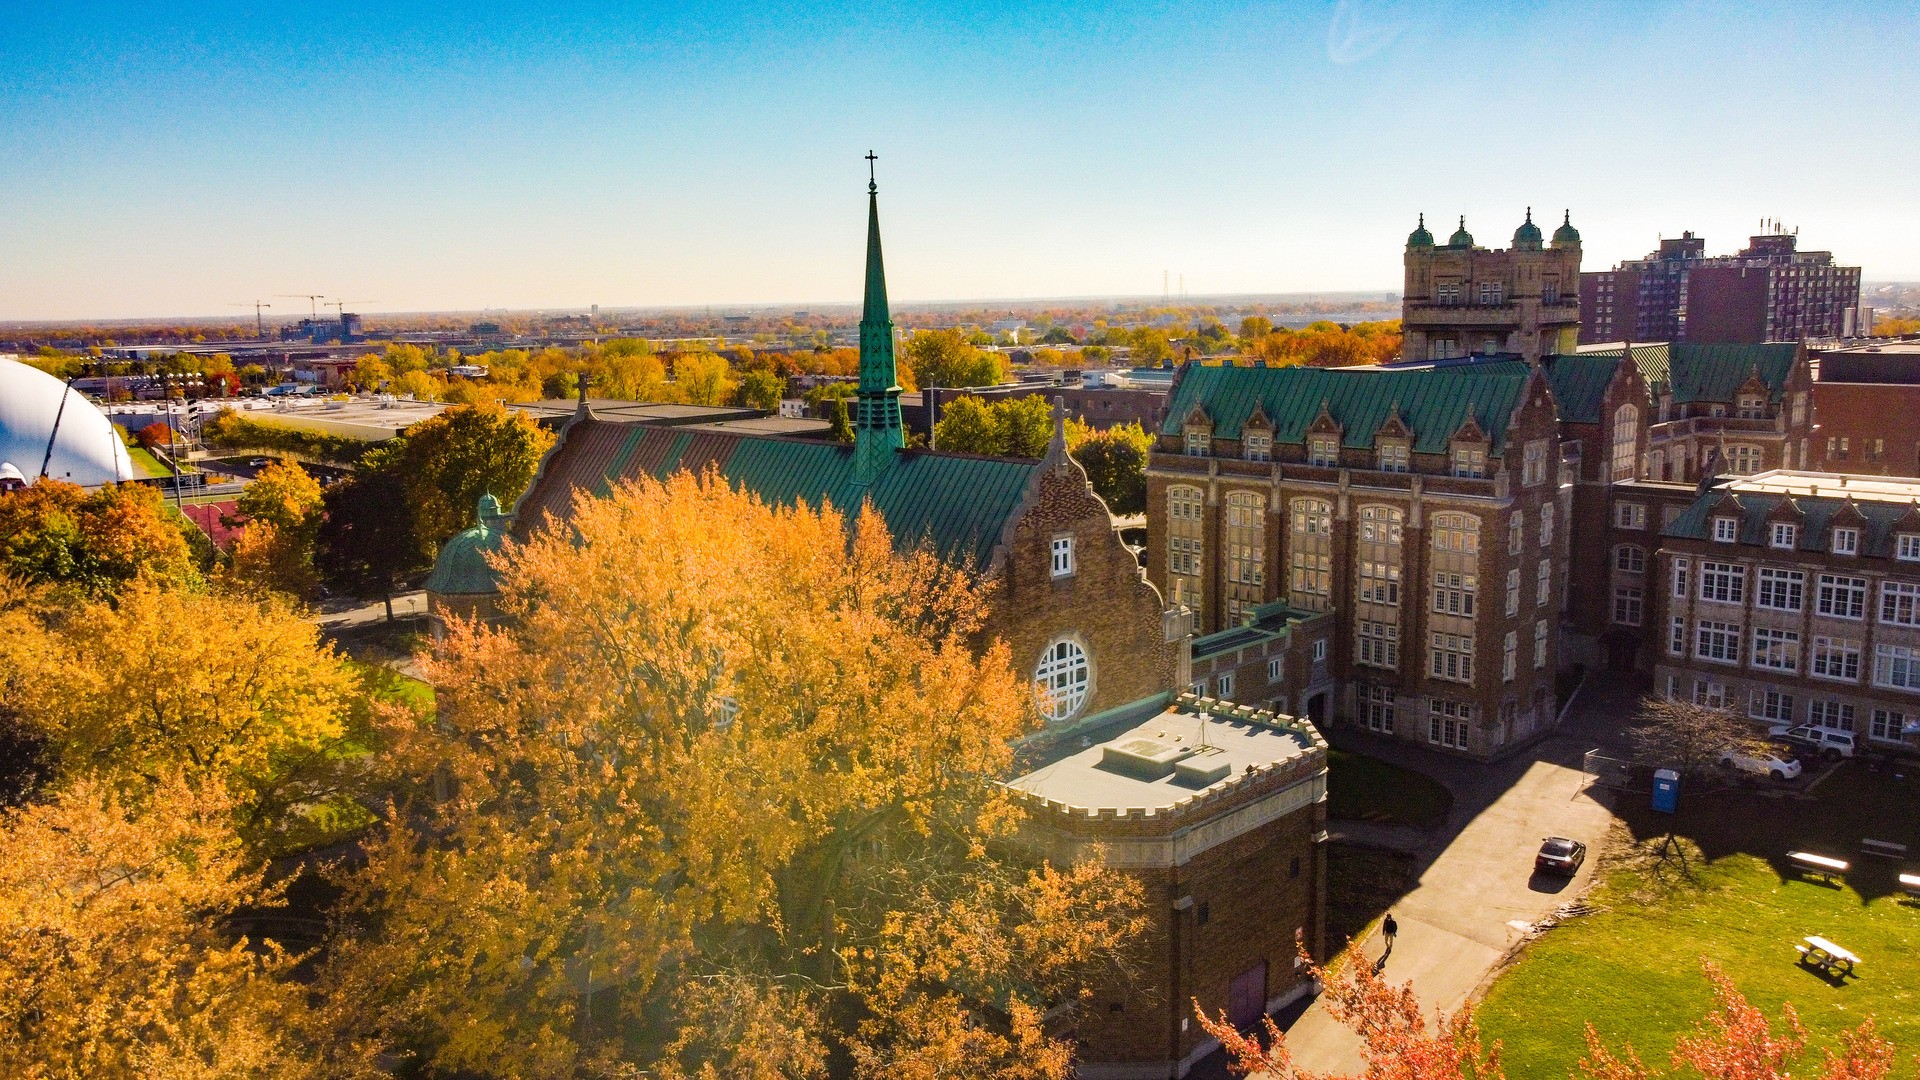 Un campus universitaire orné de vieux bâtiments et de feuillage d'automne.